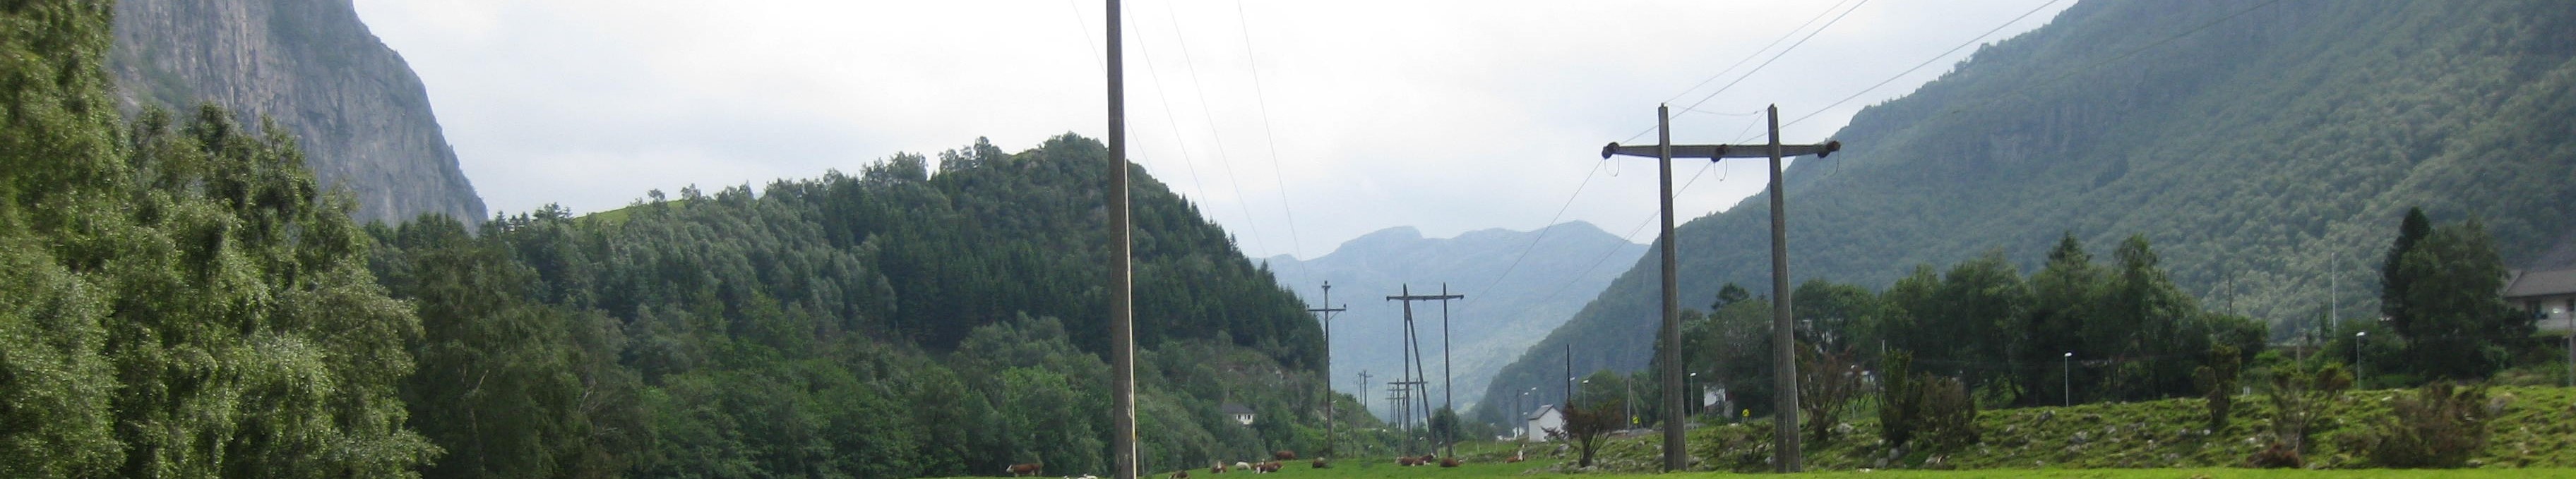 Eldre kraftlinjer over beitejord der kyr gresser med fjell på begge sider av dalen. 